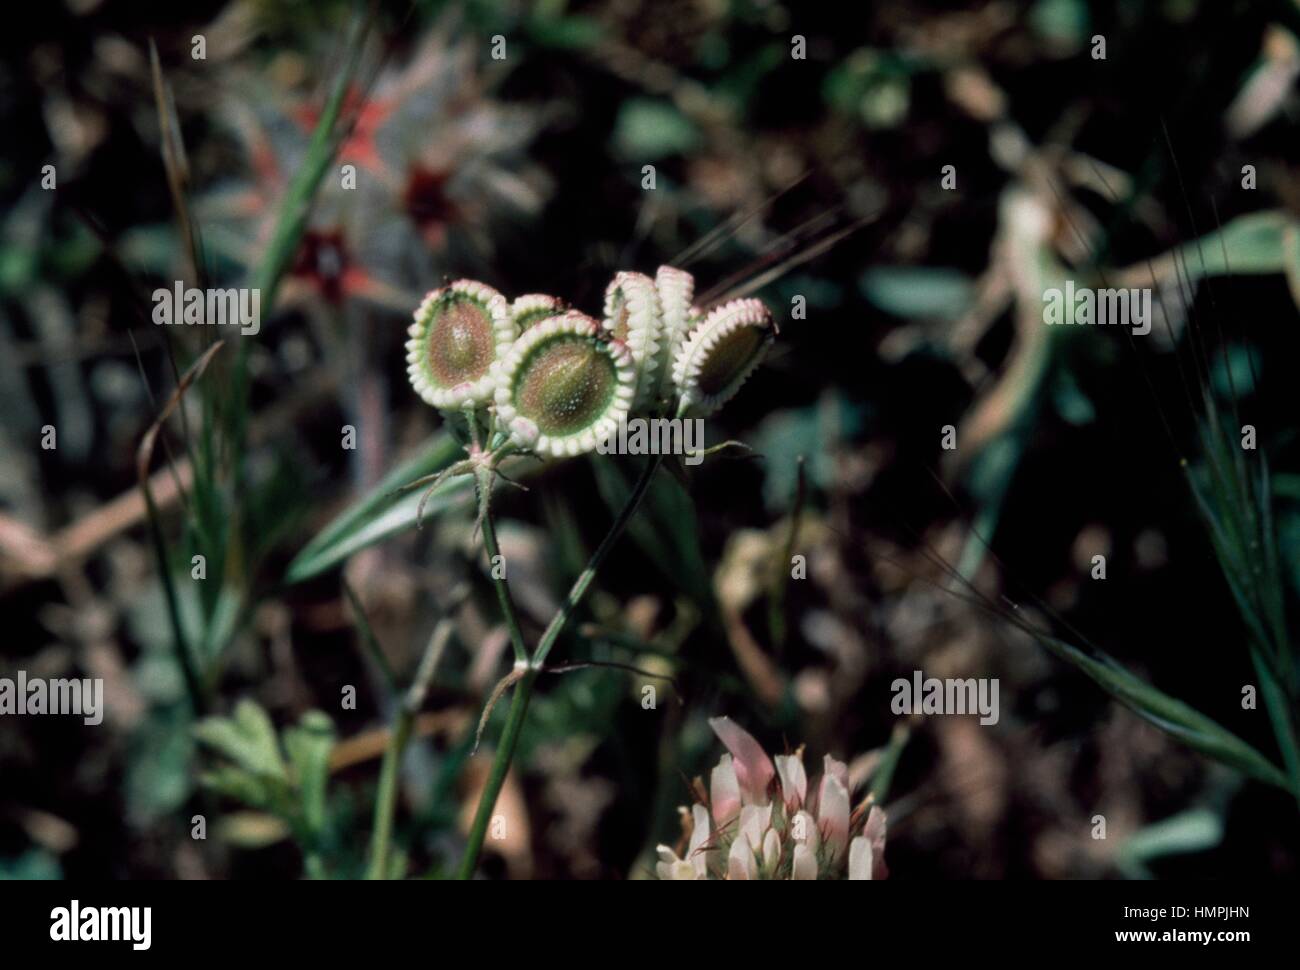 Mediterranean hartwort in bloom (Tordylium apulum), Apiaceae. Stock Photo